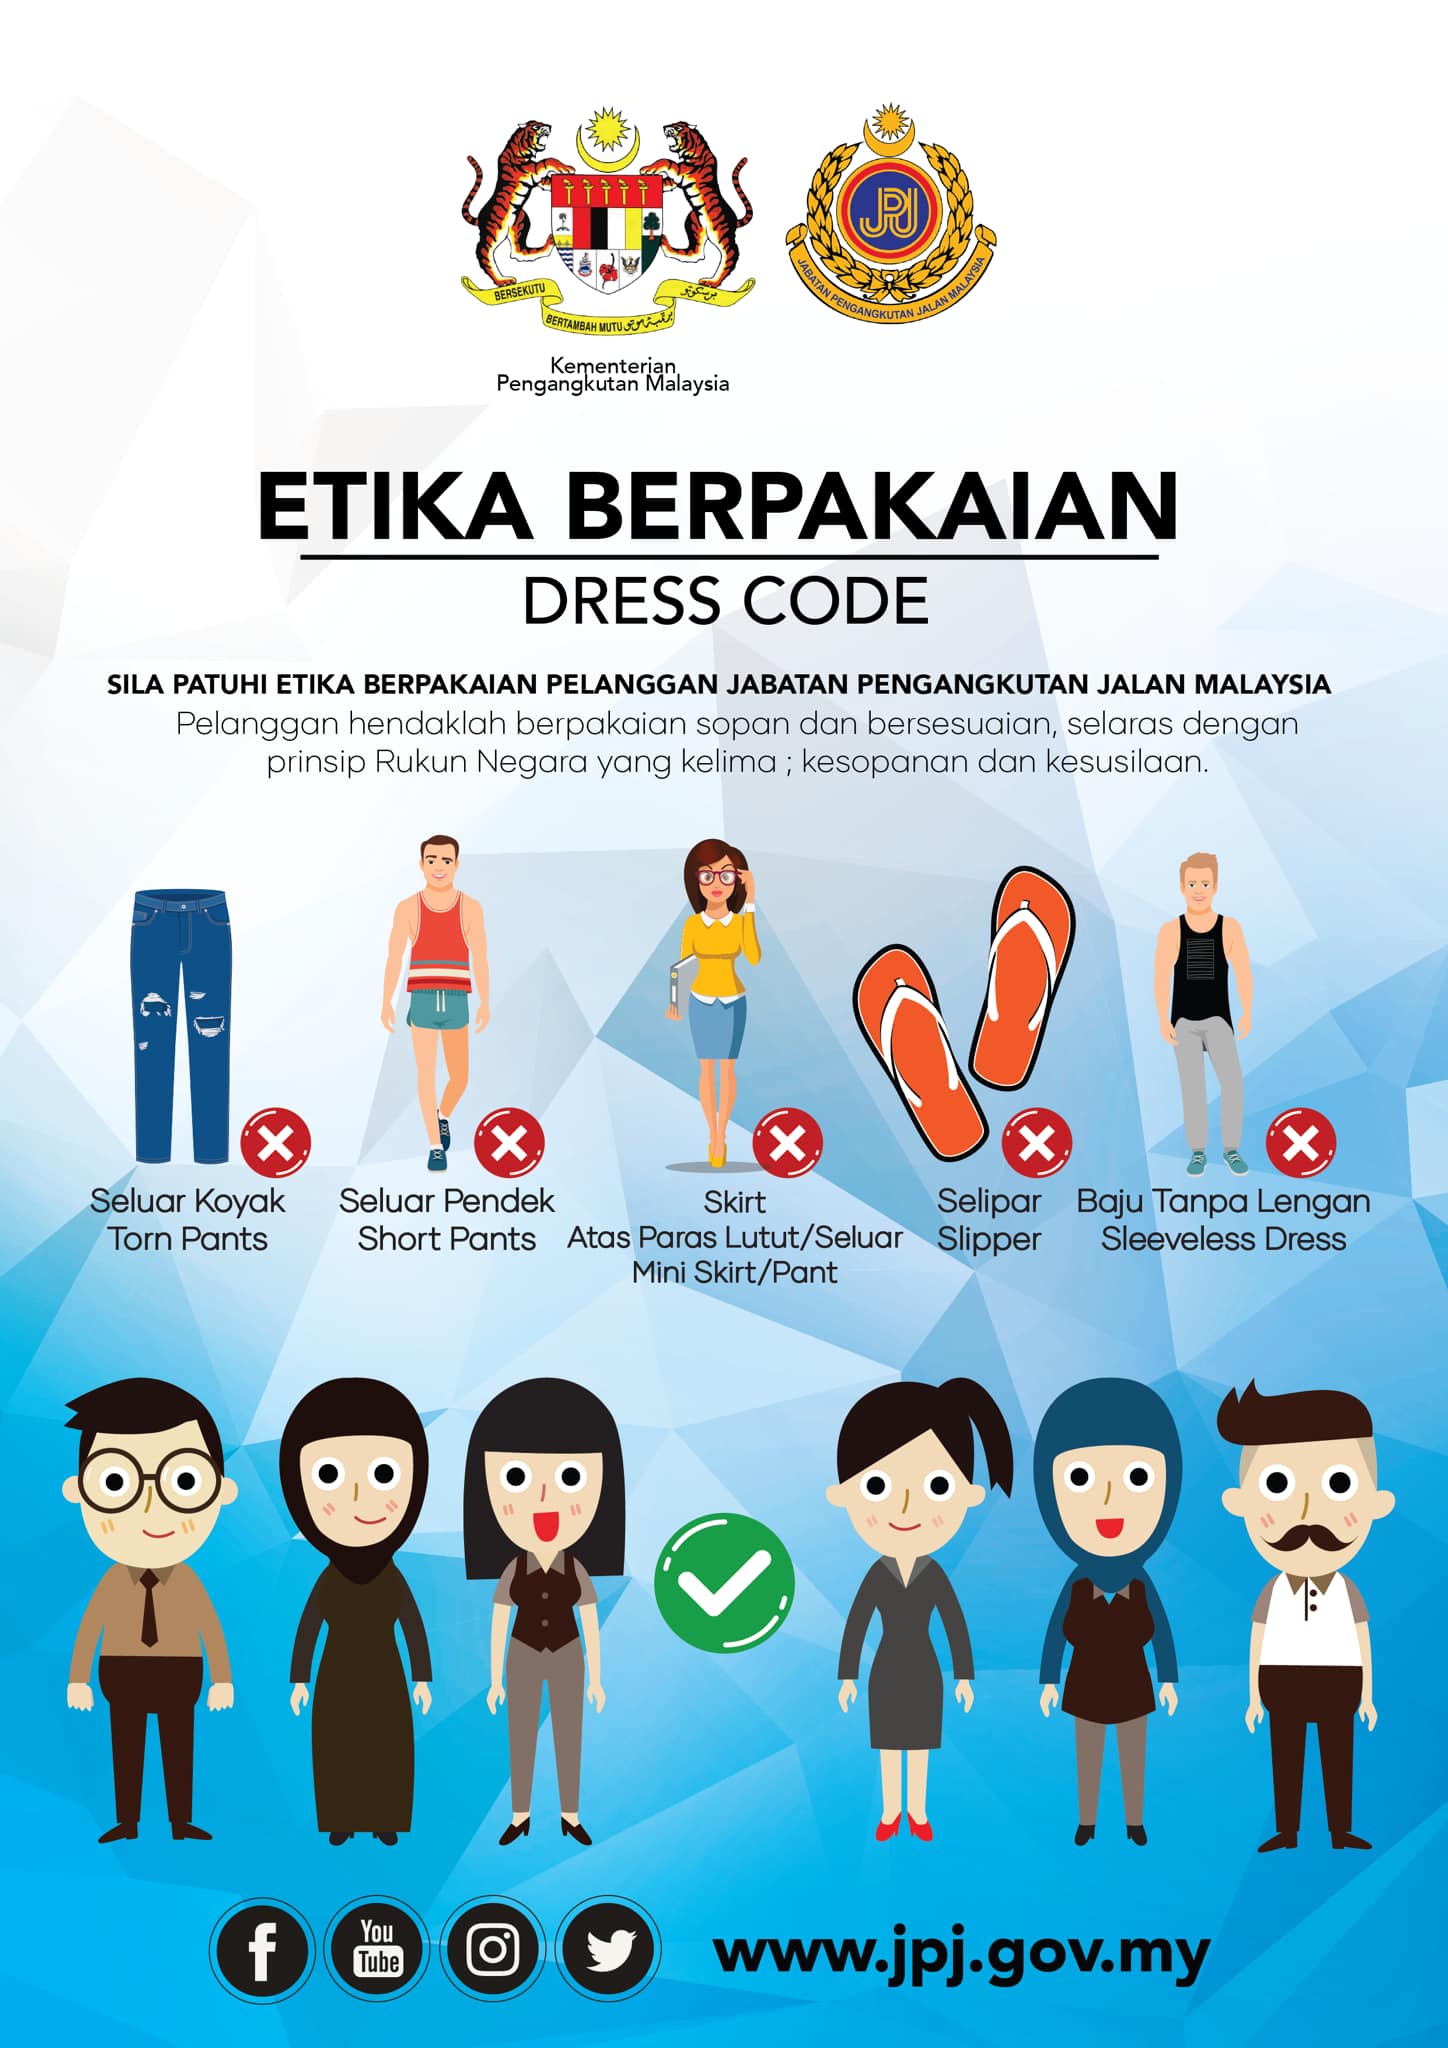 JPJ Dress Code Notice